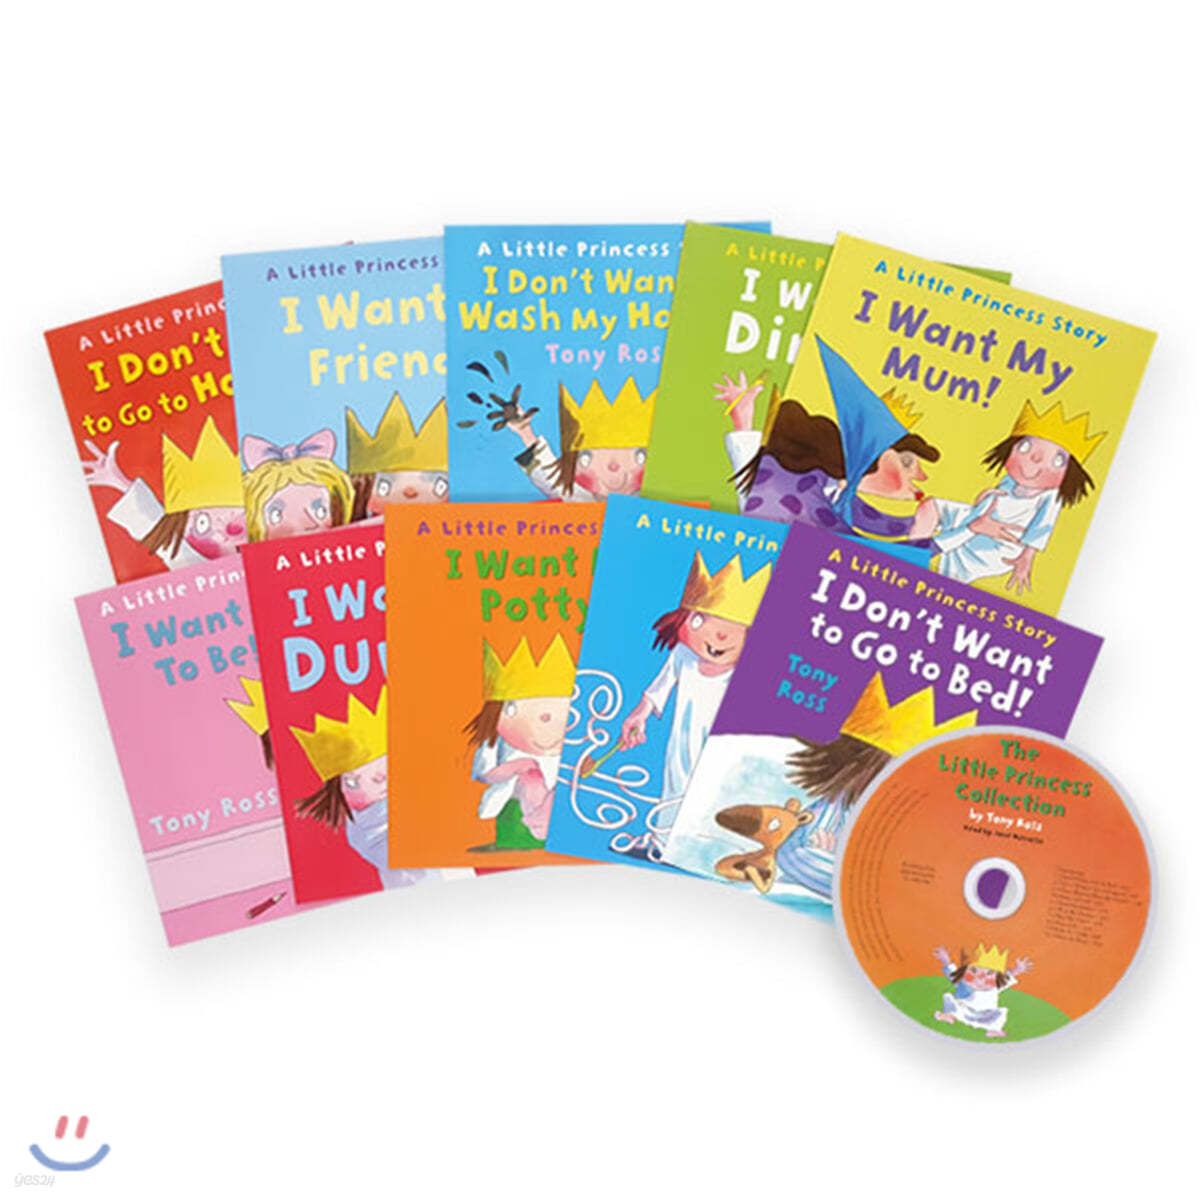 리틀 프린세스 원서 &amp; CD 세트 : Little Princess 10 Books + CD는 없음